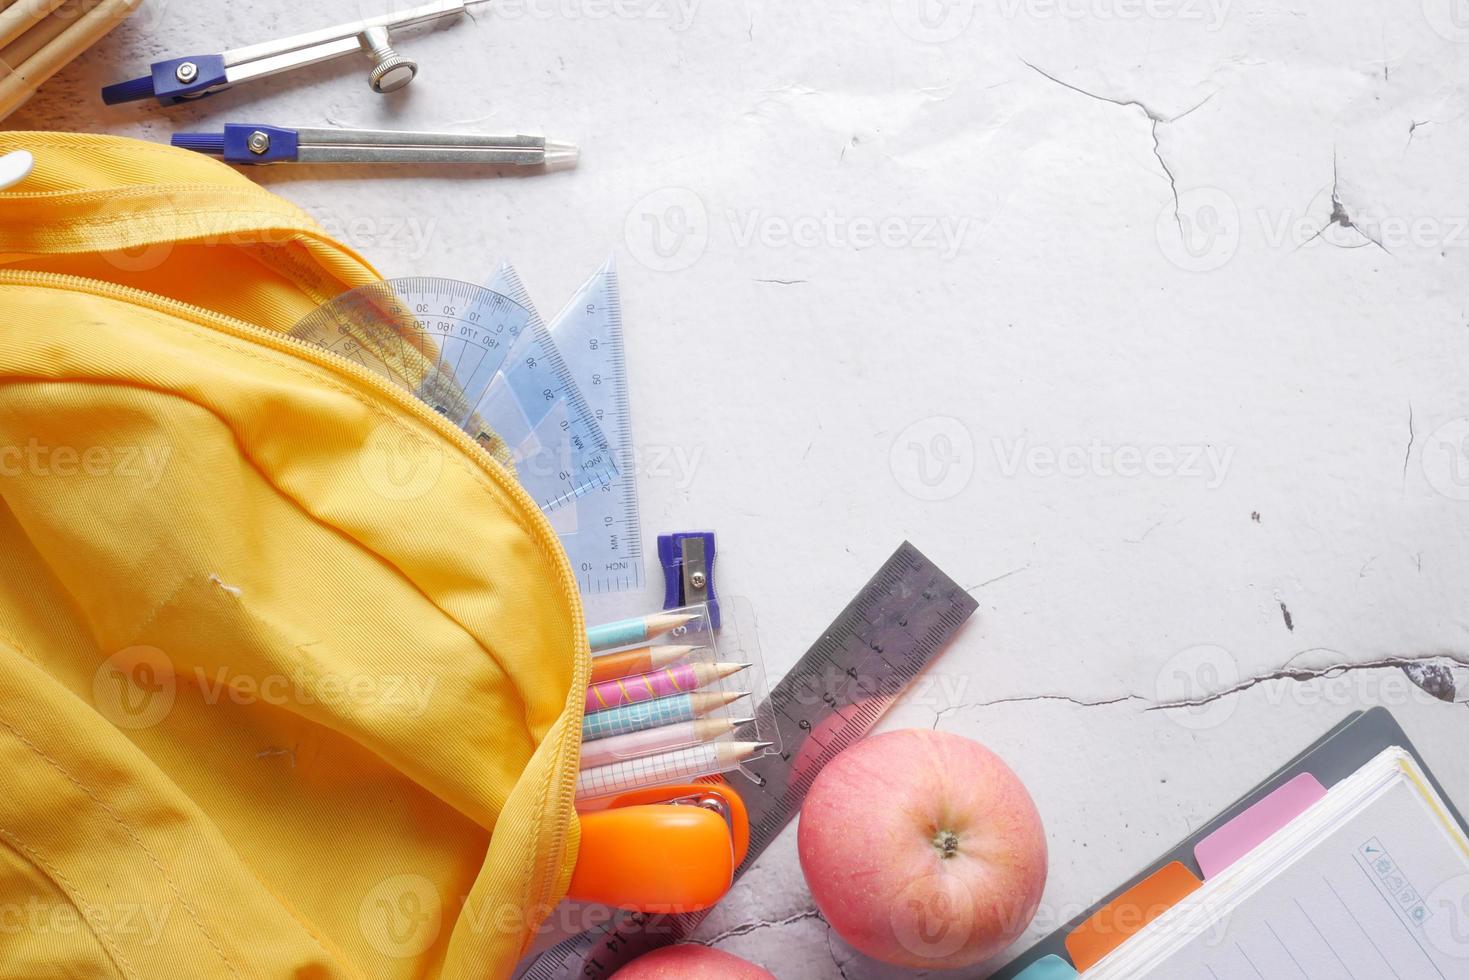 torna al concetto di scuola con zaino giallo e materiale scolastico sul tavolo foto